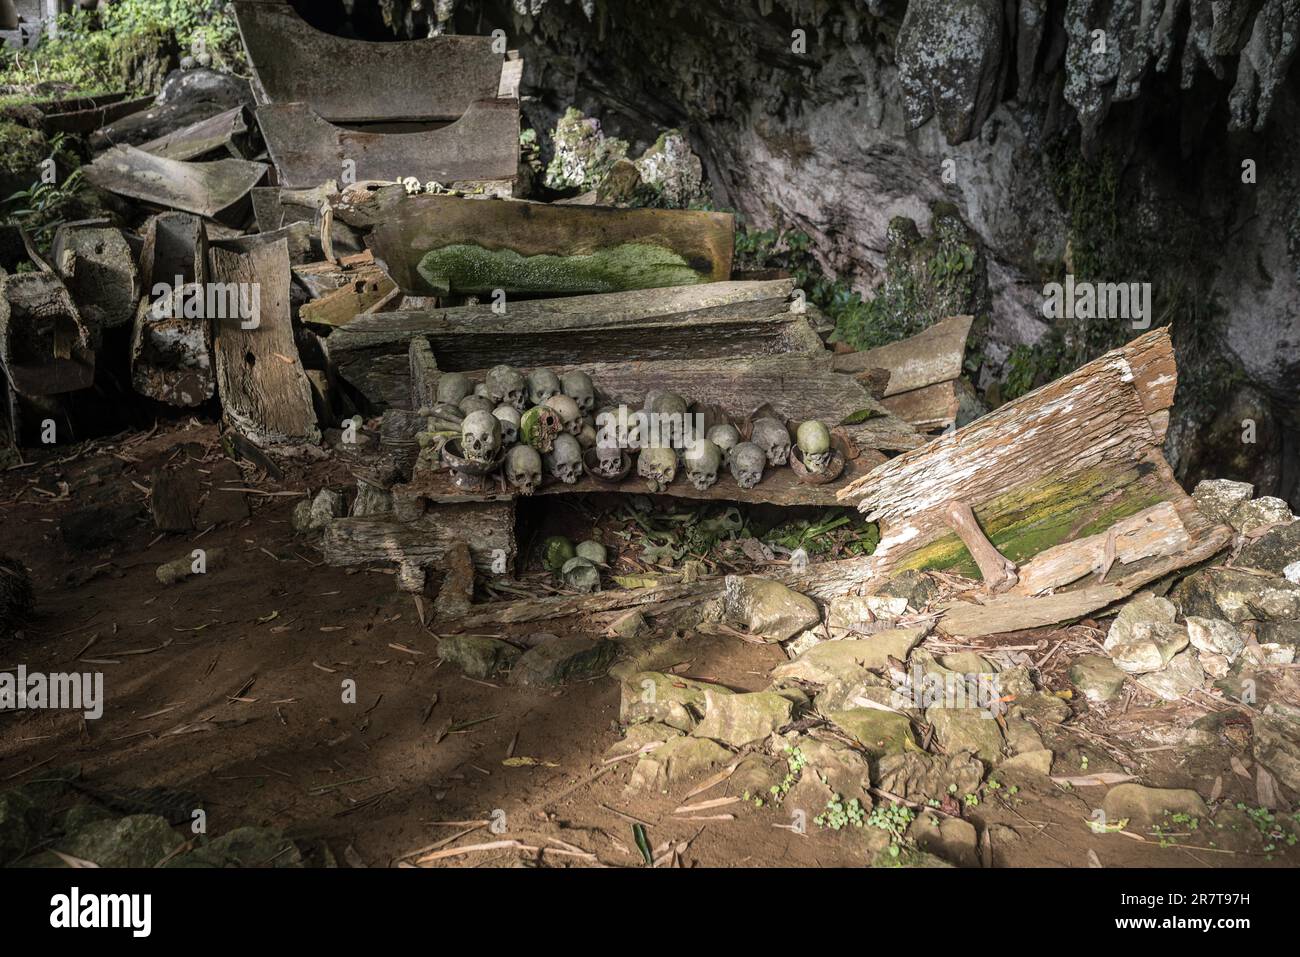 Das spektakuläre Höhlengrab von Lombok Parinding, in dem die Toten von Tana Toraja seit 700 Jahren leben. Das Grab ist berühmt für seine uralte, kunstvoll verzierte Fassade Stockfoto